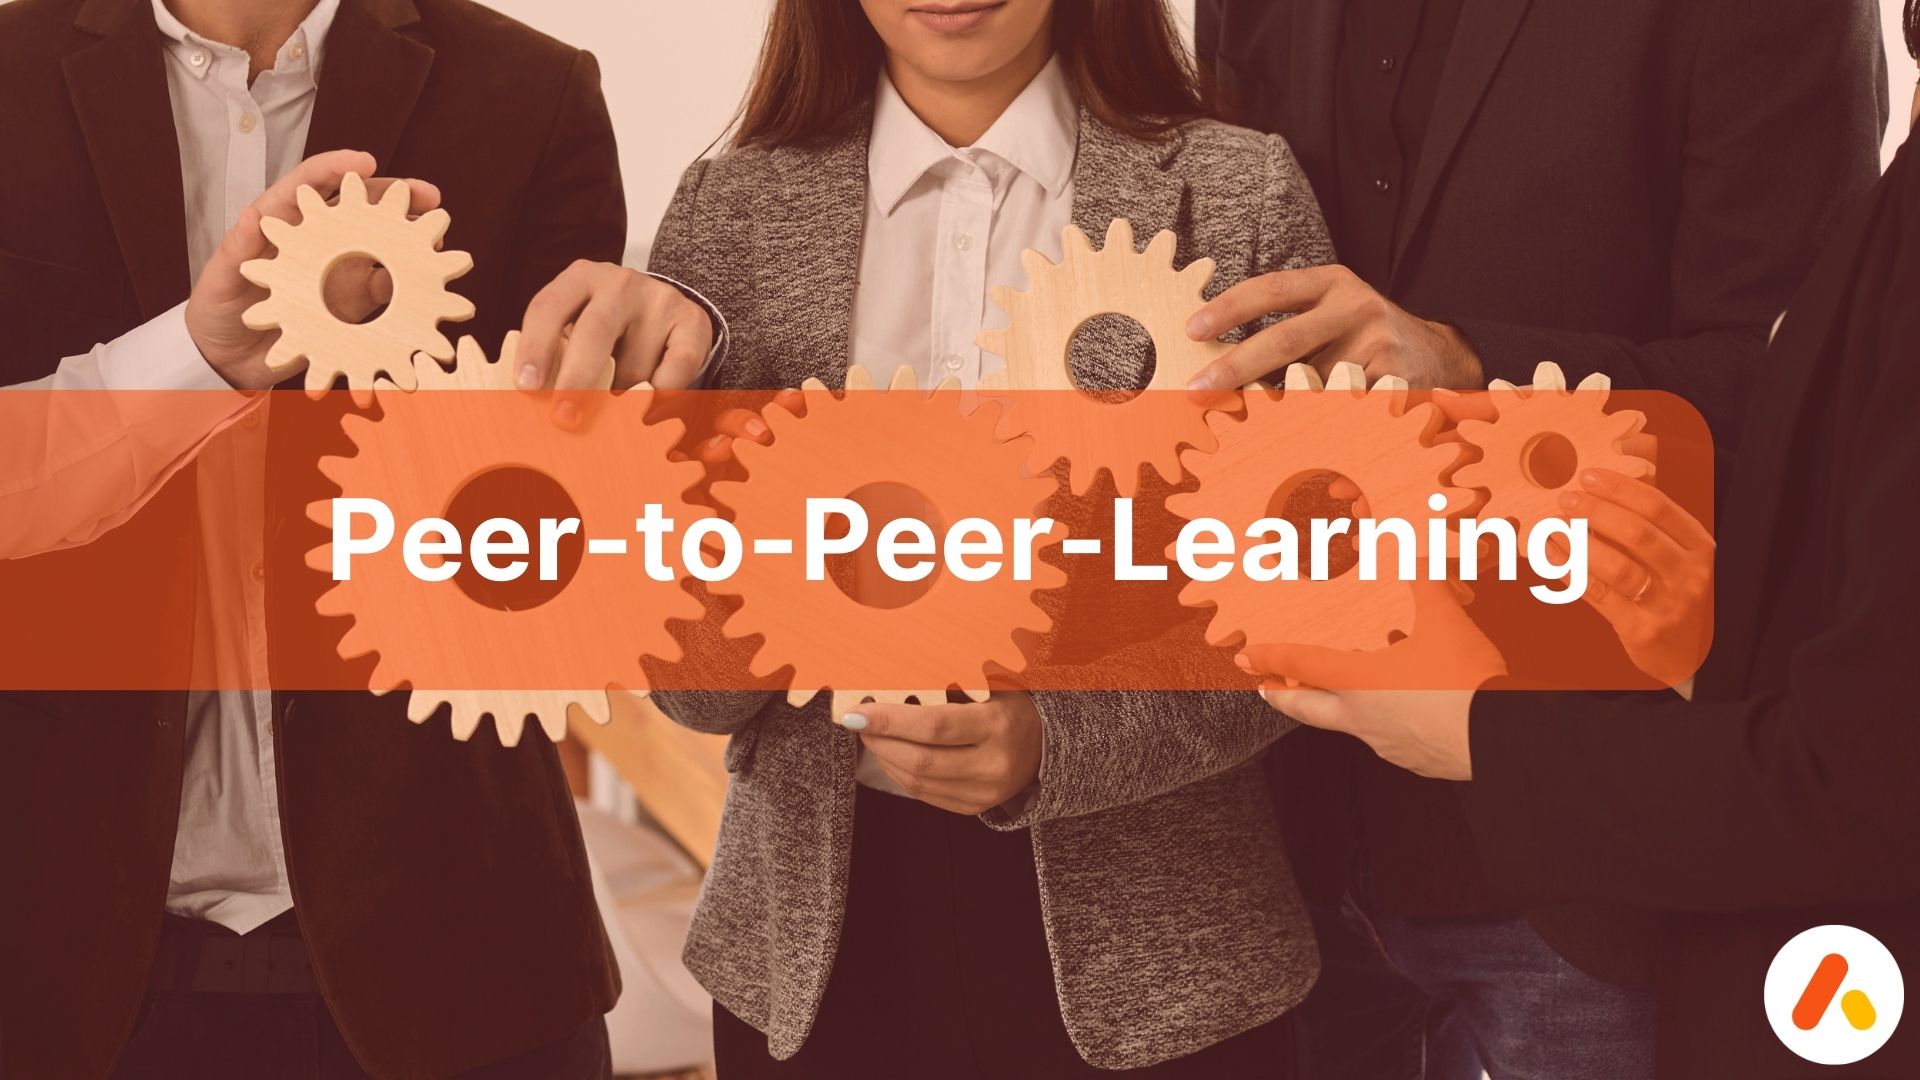 Peer-to-peer-learning